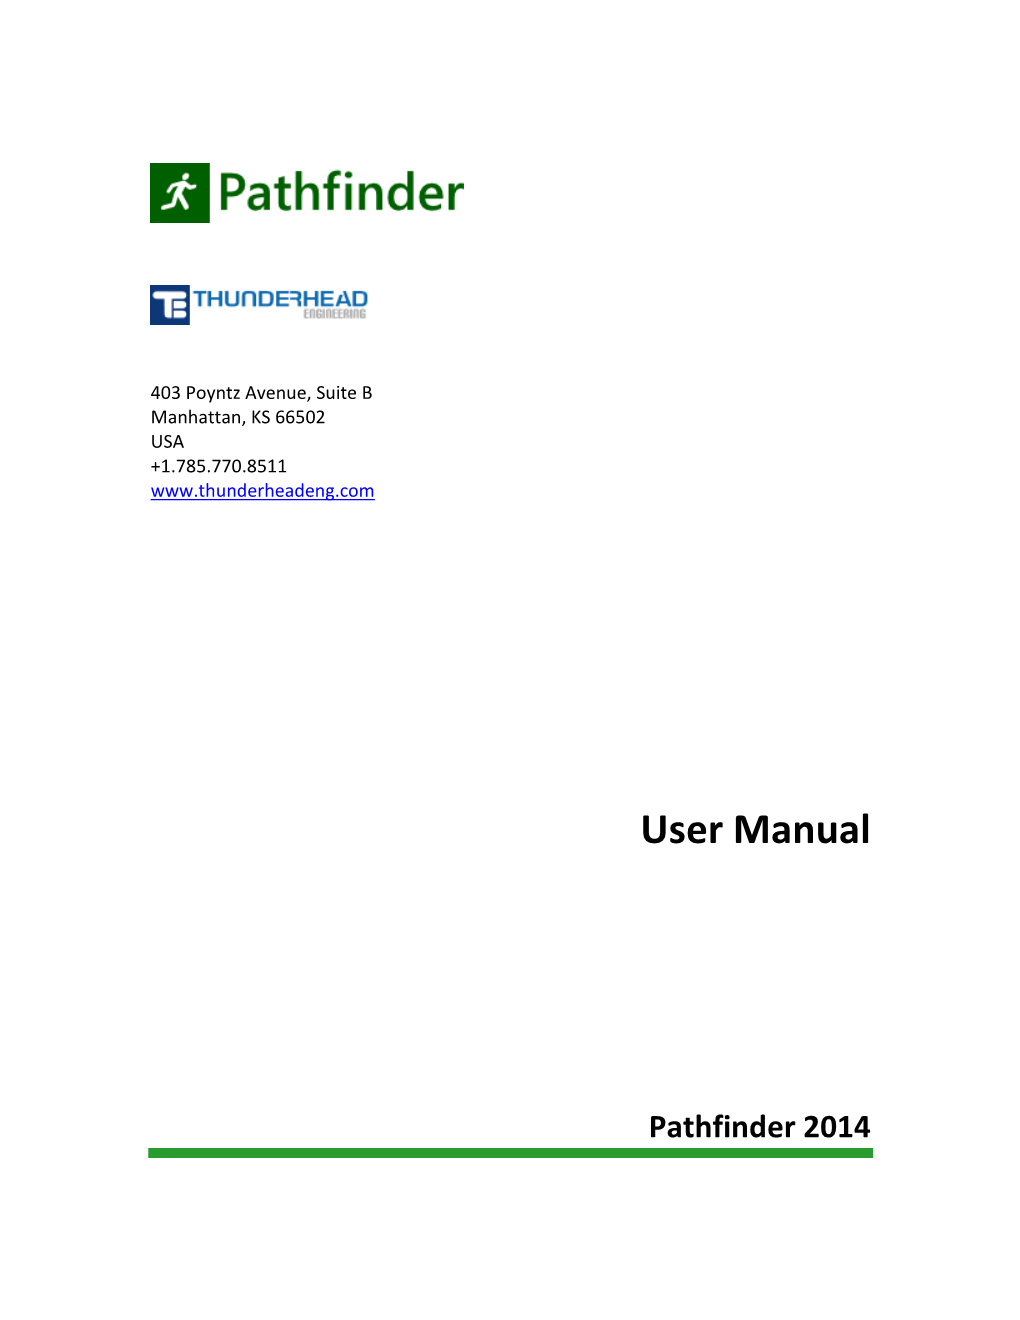 Pathfinder User Manual